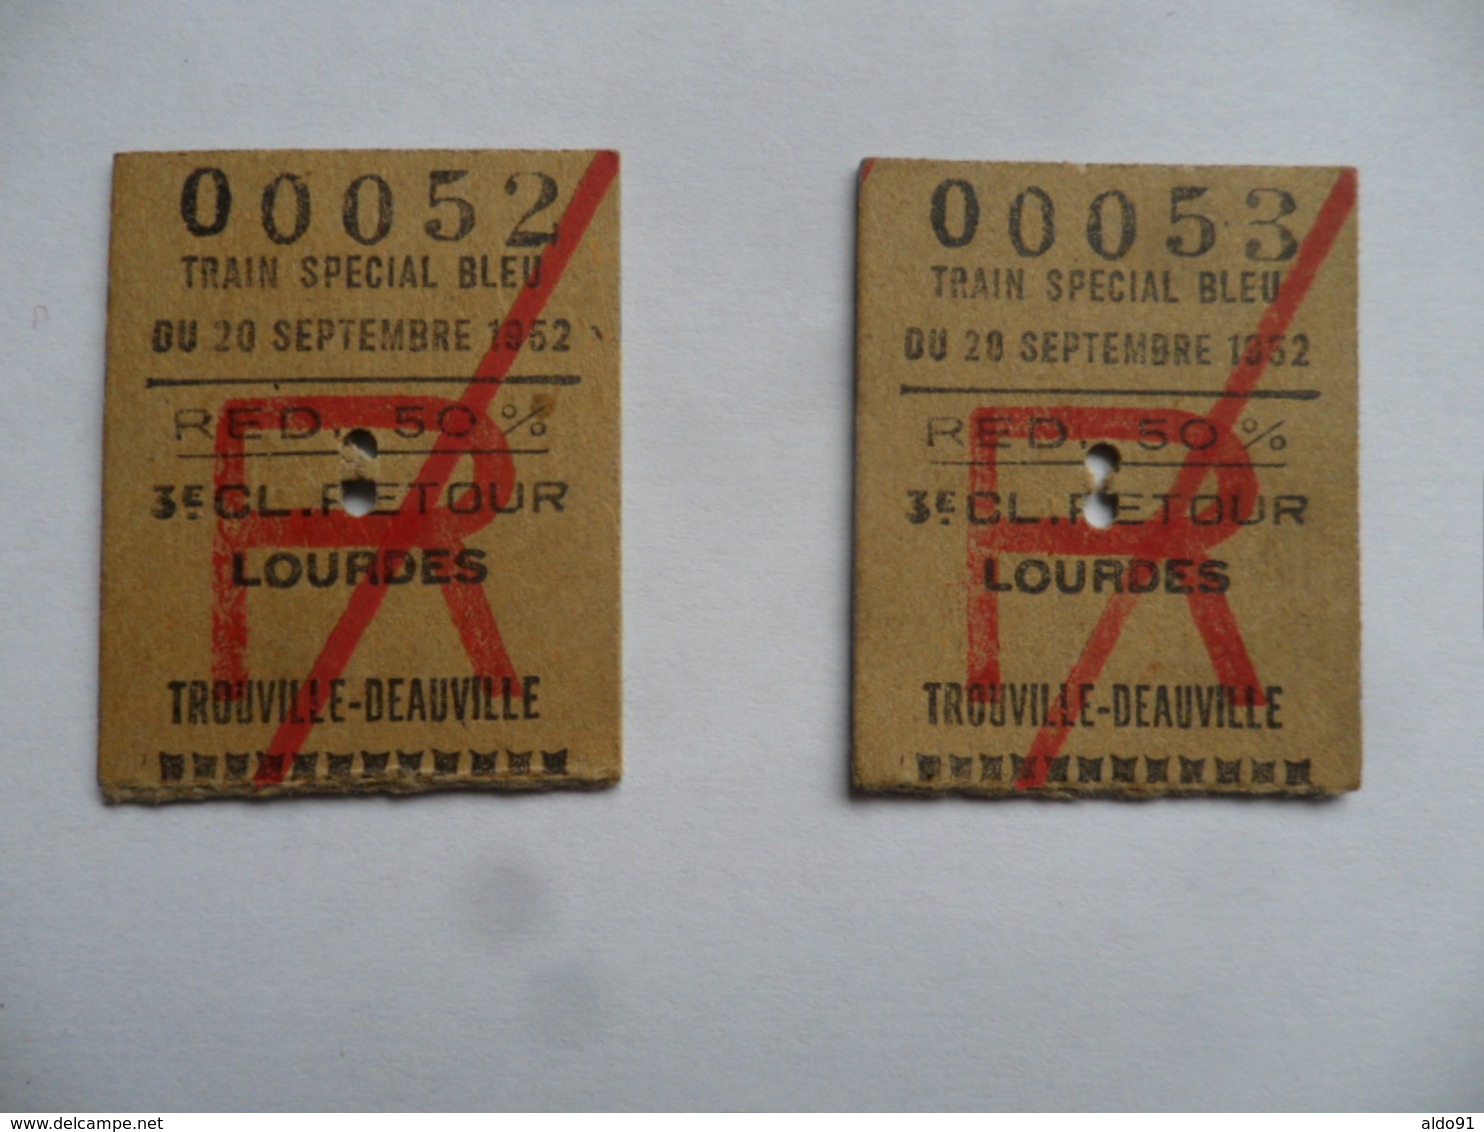 (Chemin De Fer - 3è Classe) - Lourdes>>Trouville - 2 Tickets "Train Spécial Bleu Du 20/09/1952" (Réd. 50%) - Europe